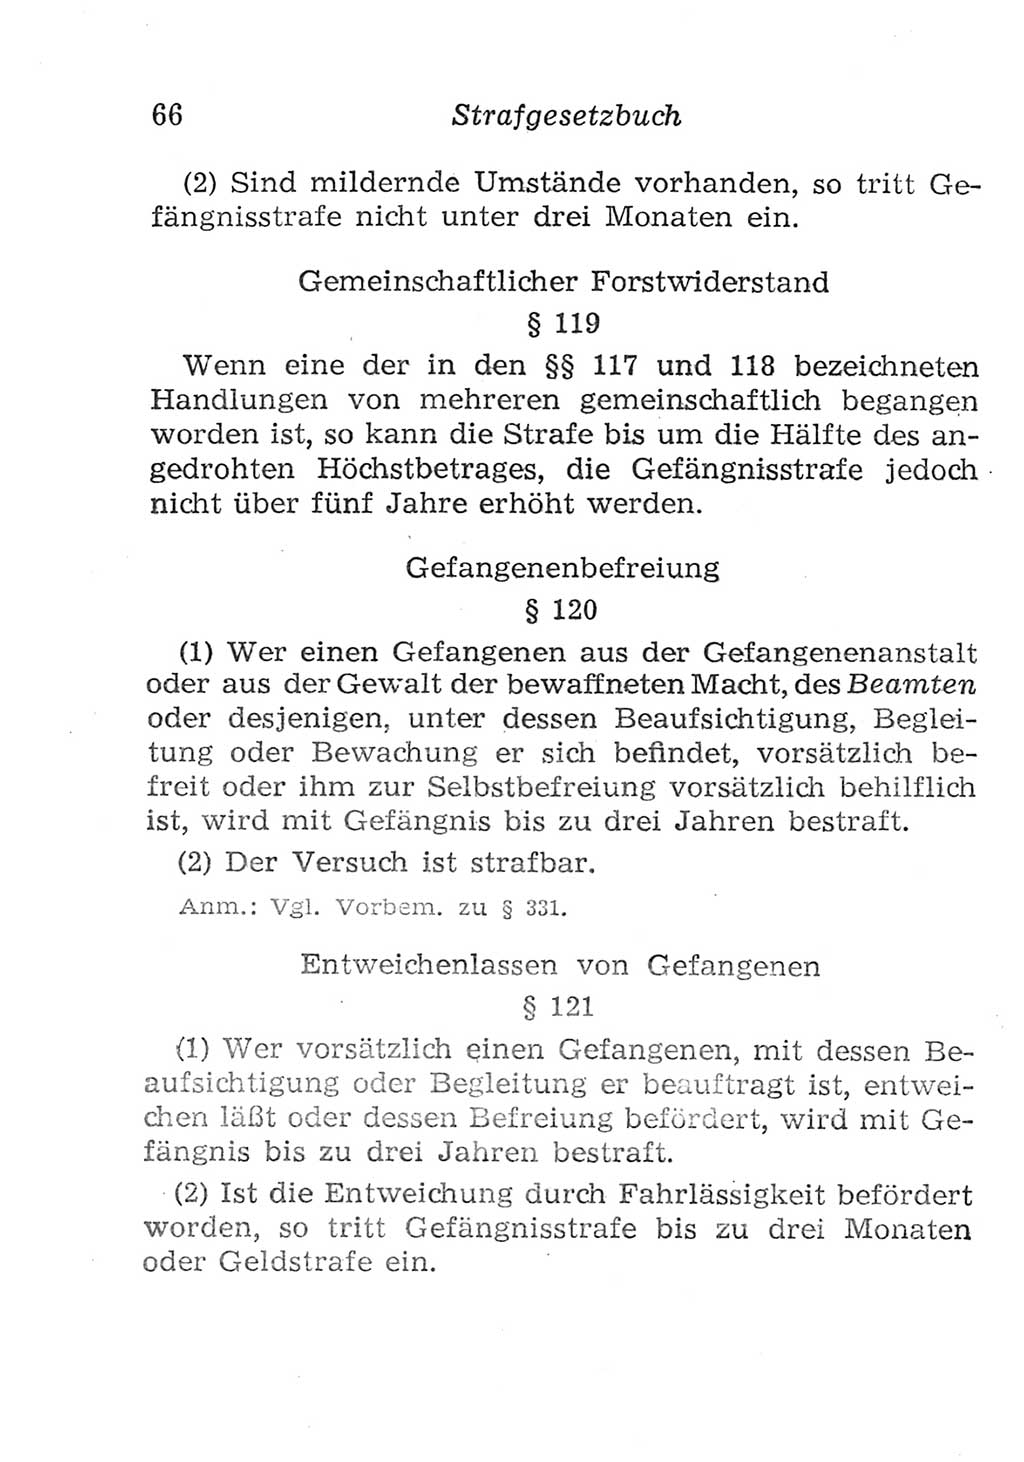 Strafgesetzbuch (StGB) und andere Strafgesetze [Deutsche Demokratische Republik (DDR)] 1957, Seite 66 (StGB Strafges. DDR 1957, S. 66)